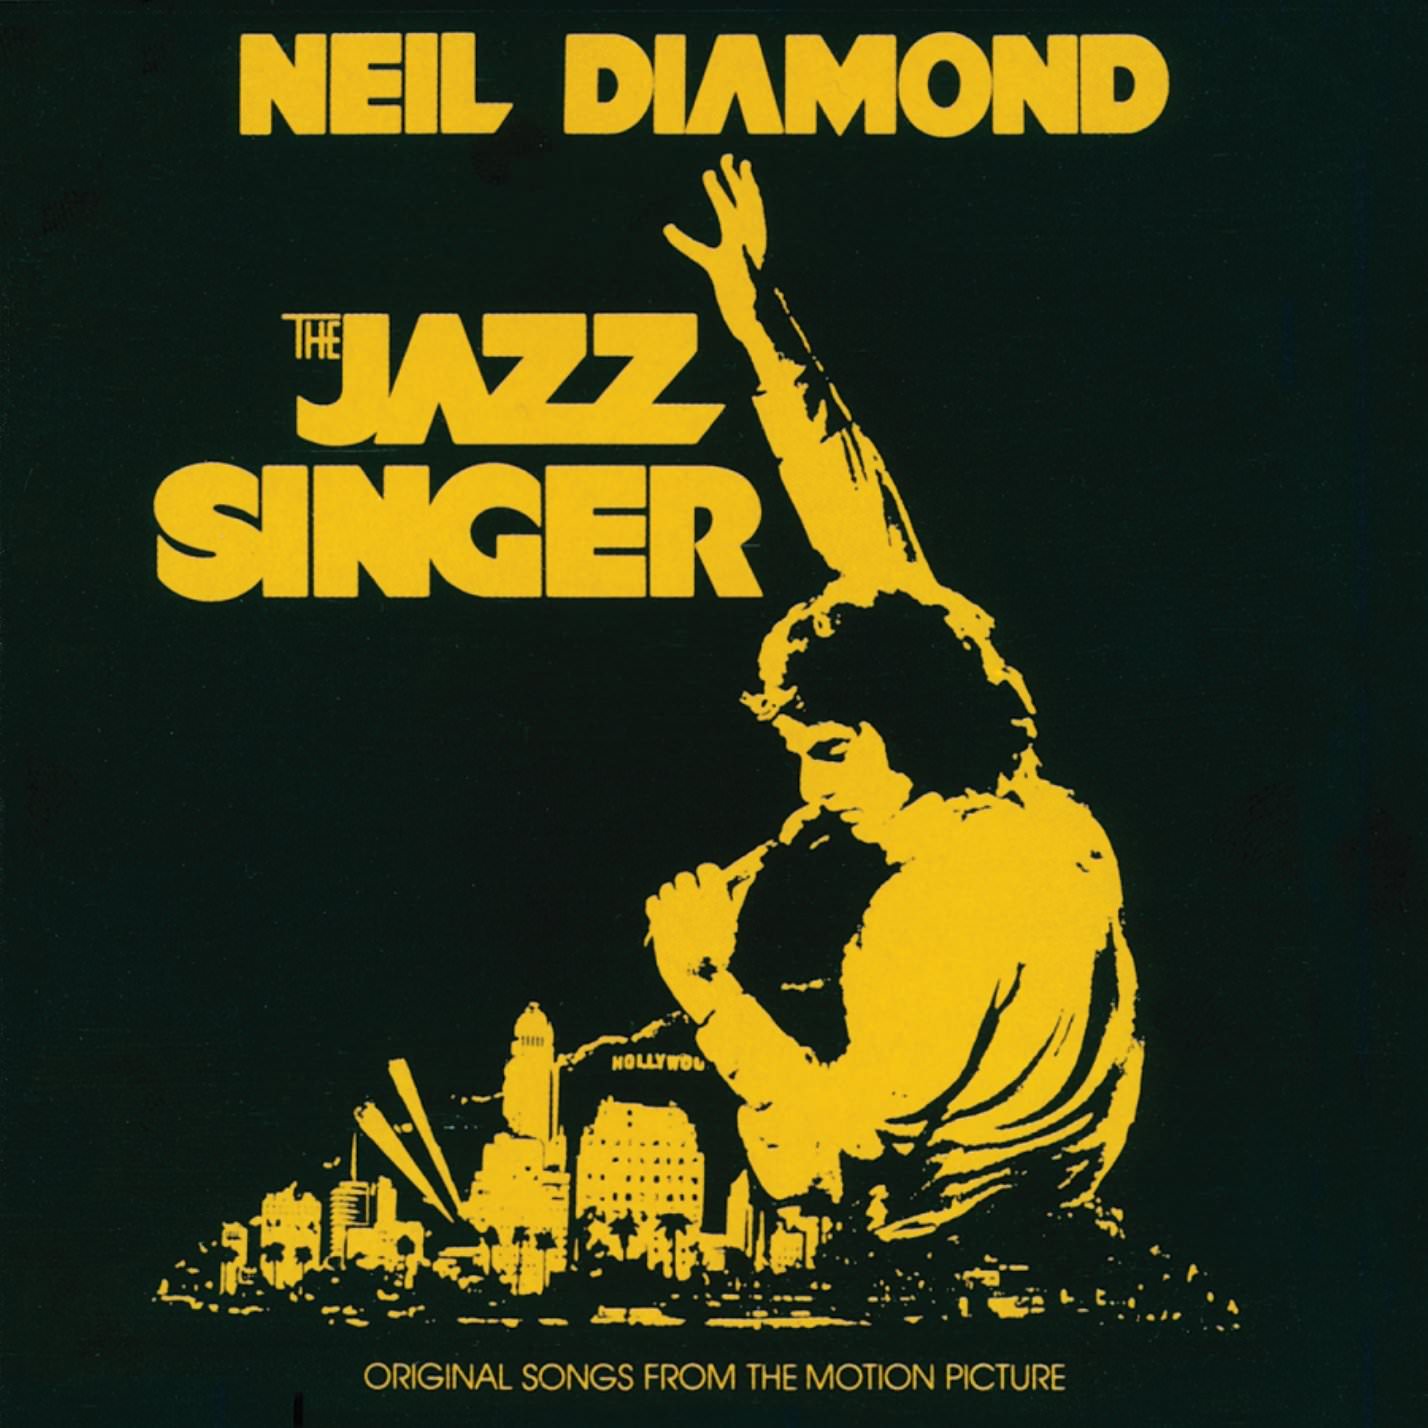 Neil Diamond – The Jazz Singer (1980/2016) [HDTracks FLAC 24bit/96kHz]